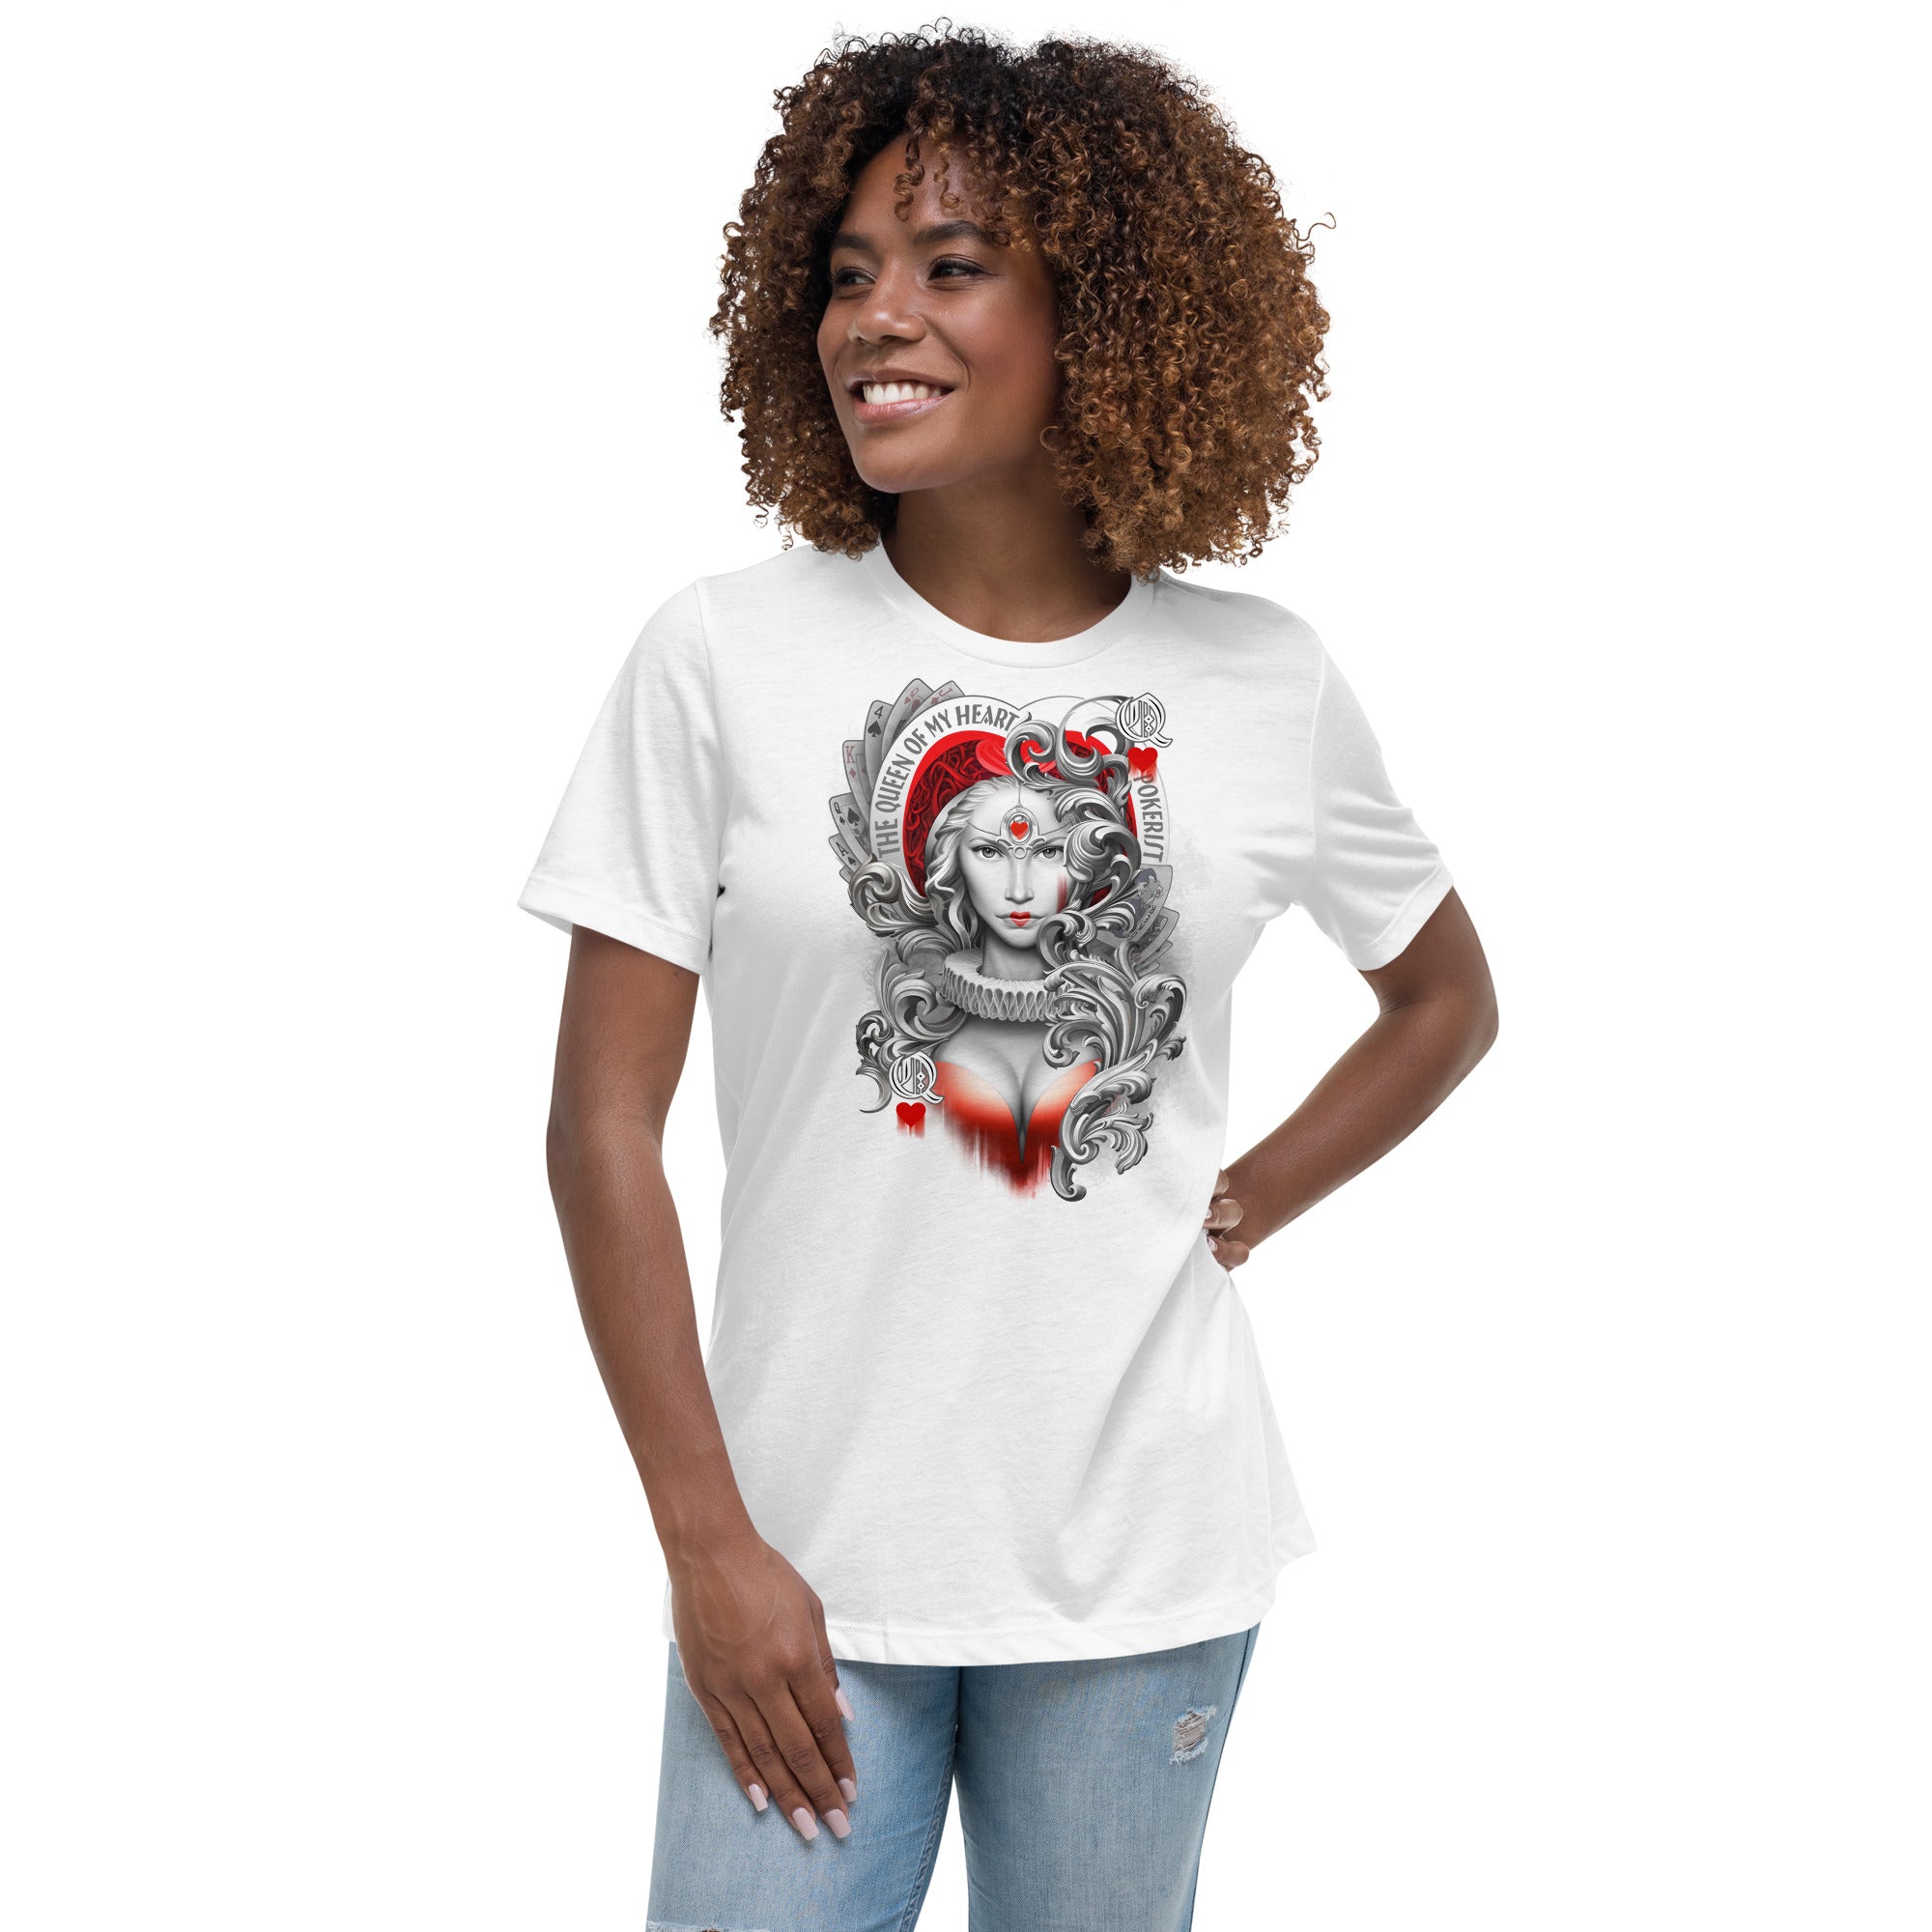 Queen Hearts - Women's Relaxed T-Shirt